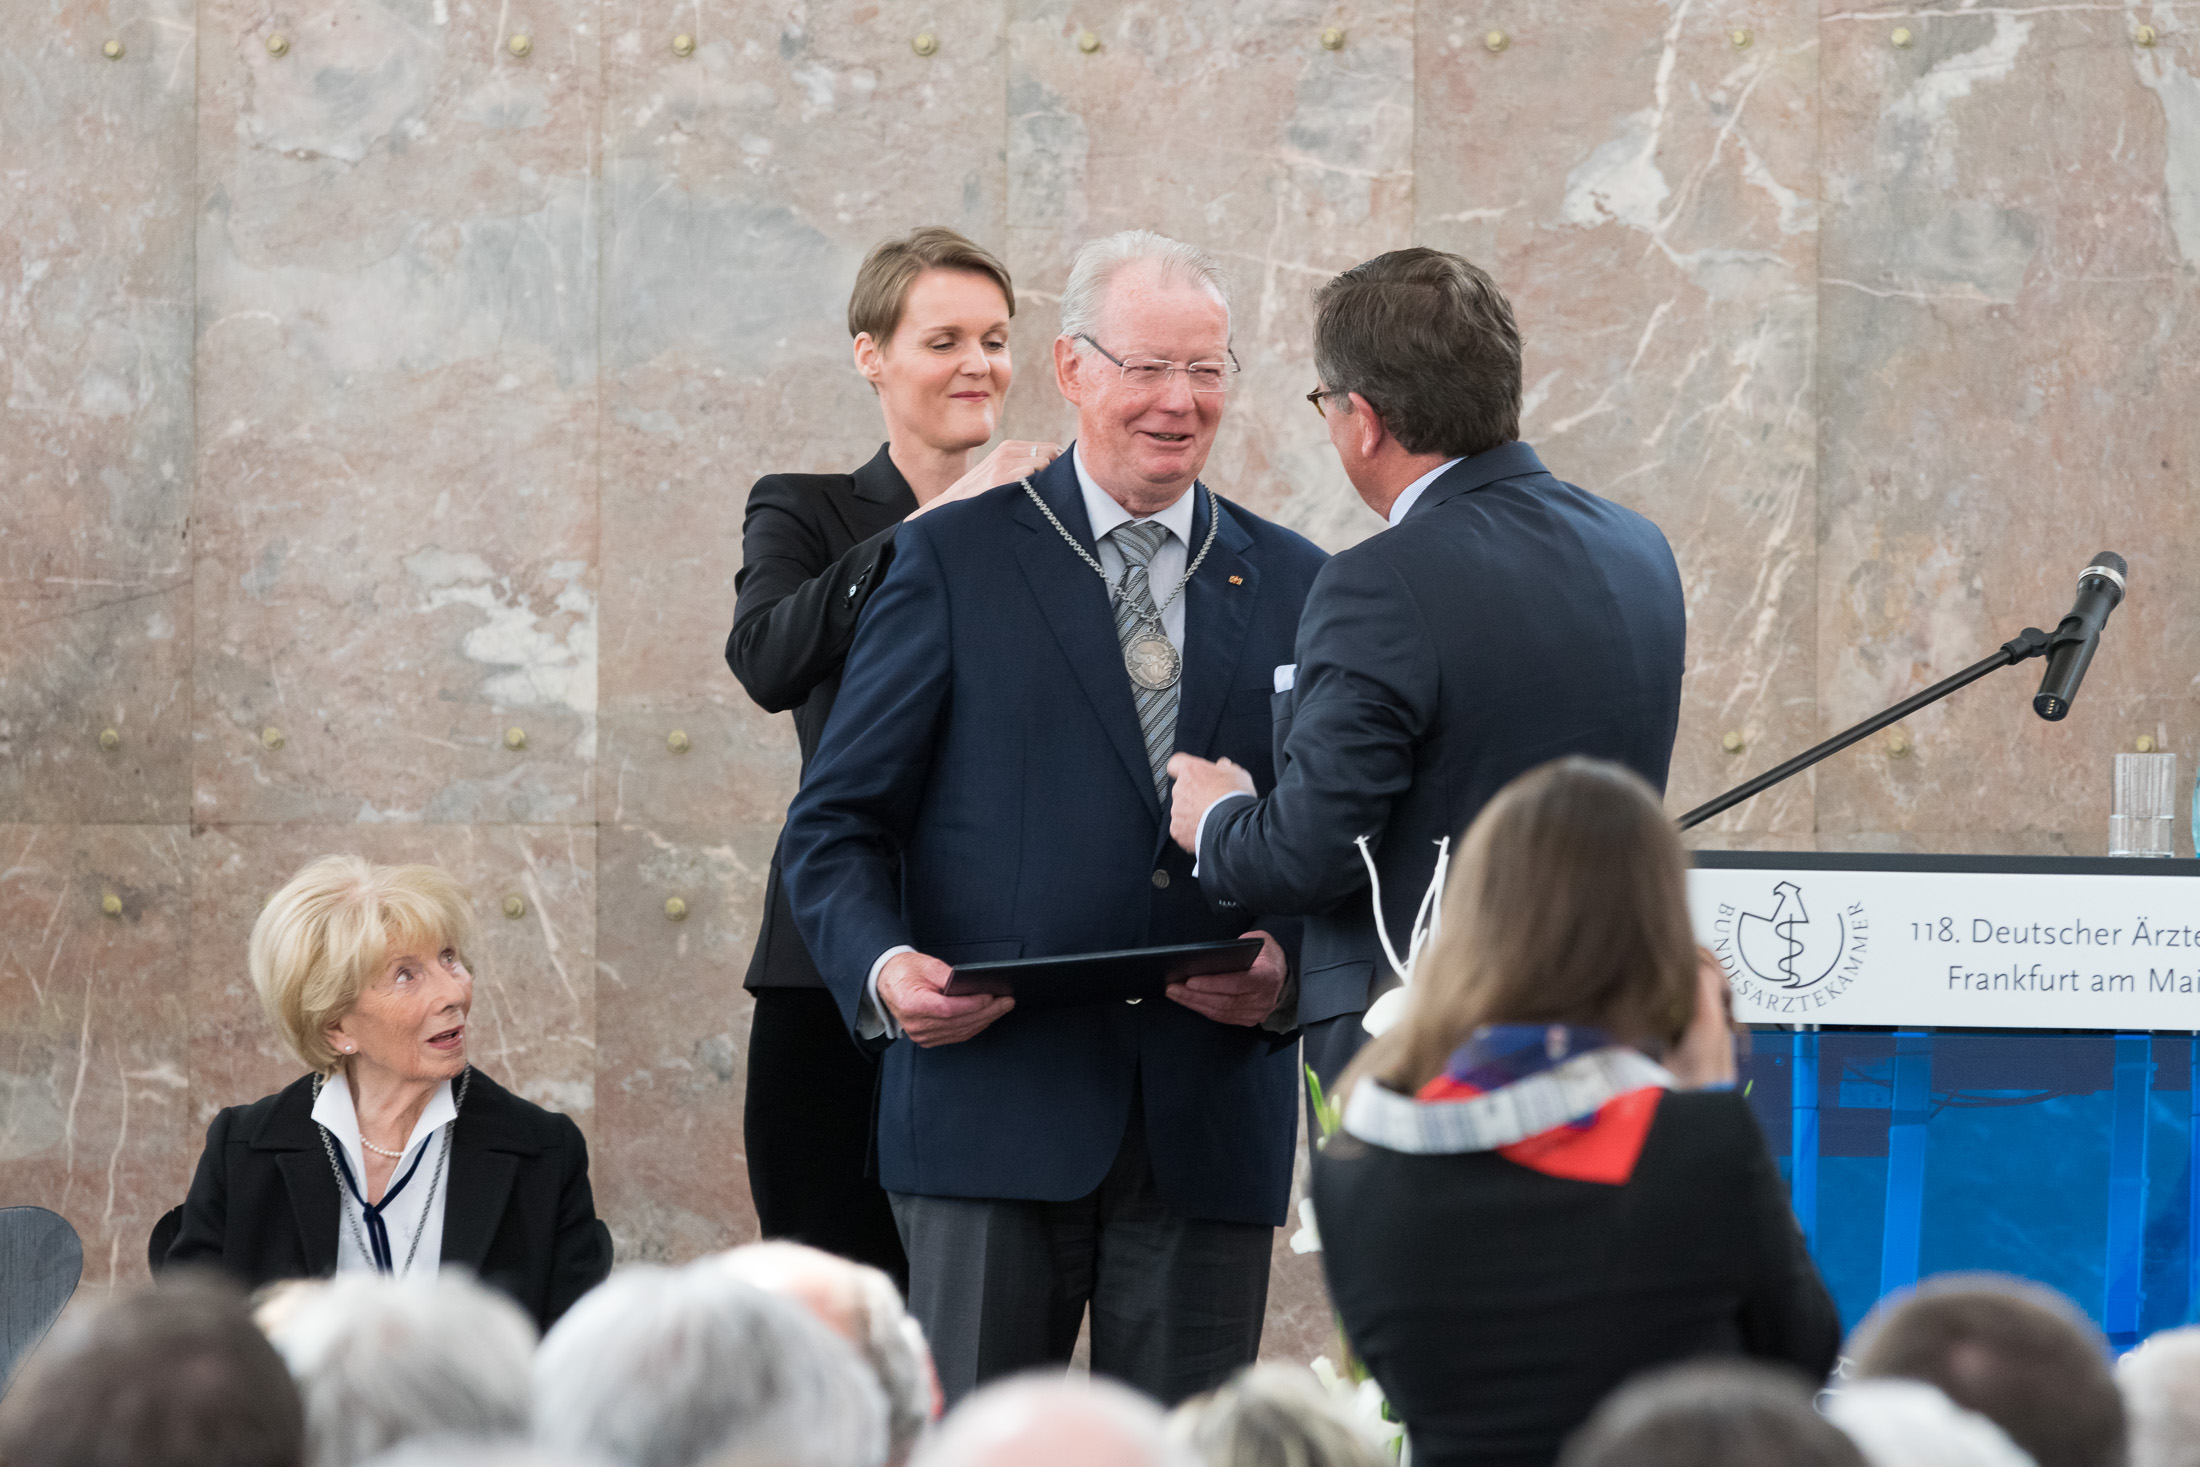 Prof. Dr. med. Hansjörg Melchior erhält die Paracelsus-Medaille der deutschen Ärzteschaft auf dem 118. Deutschen Ärztetag 2015 in Frankfurt am Main